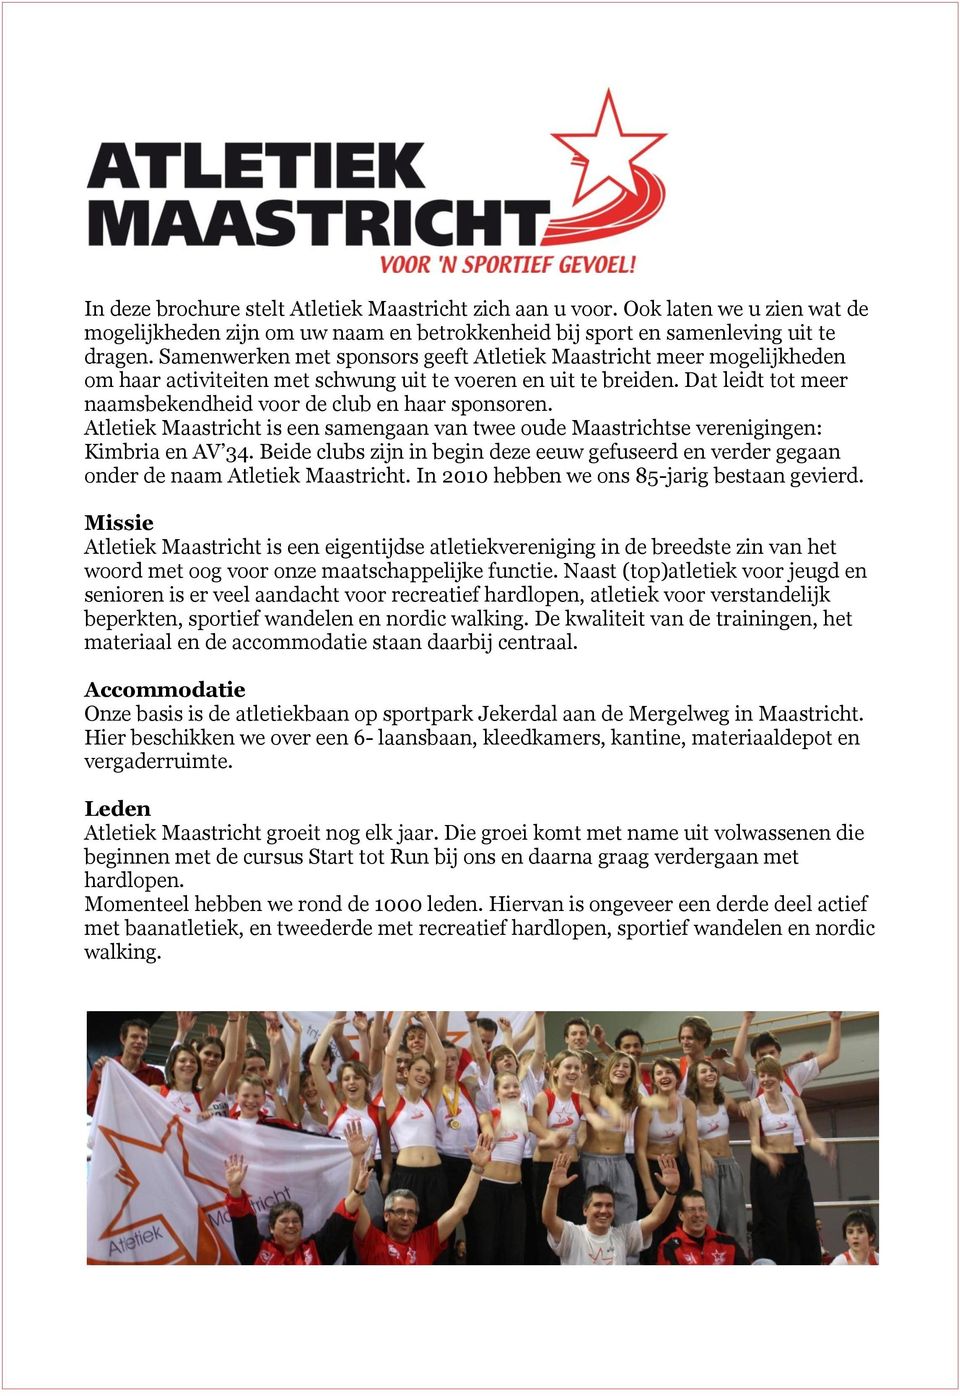 Dat leidt tot meer naamsbekendheid voor de club en haar sponsoren. Atletiek Maastricht is een samengaan van twee oude Maastrichtse verenigingen: Kimbria en AV 34.